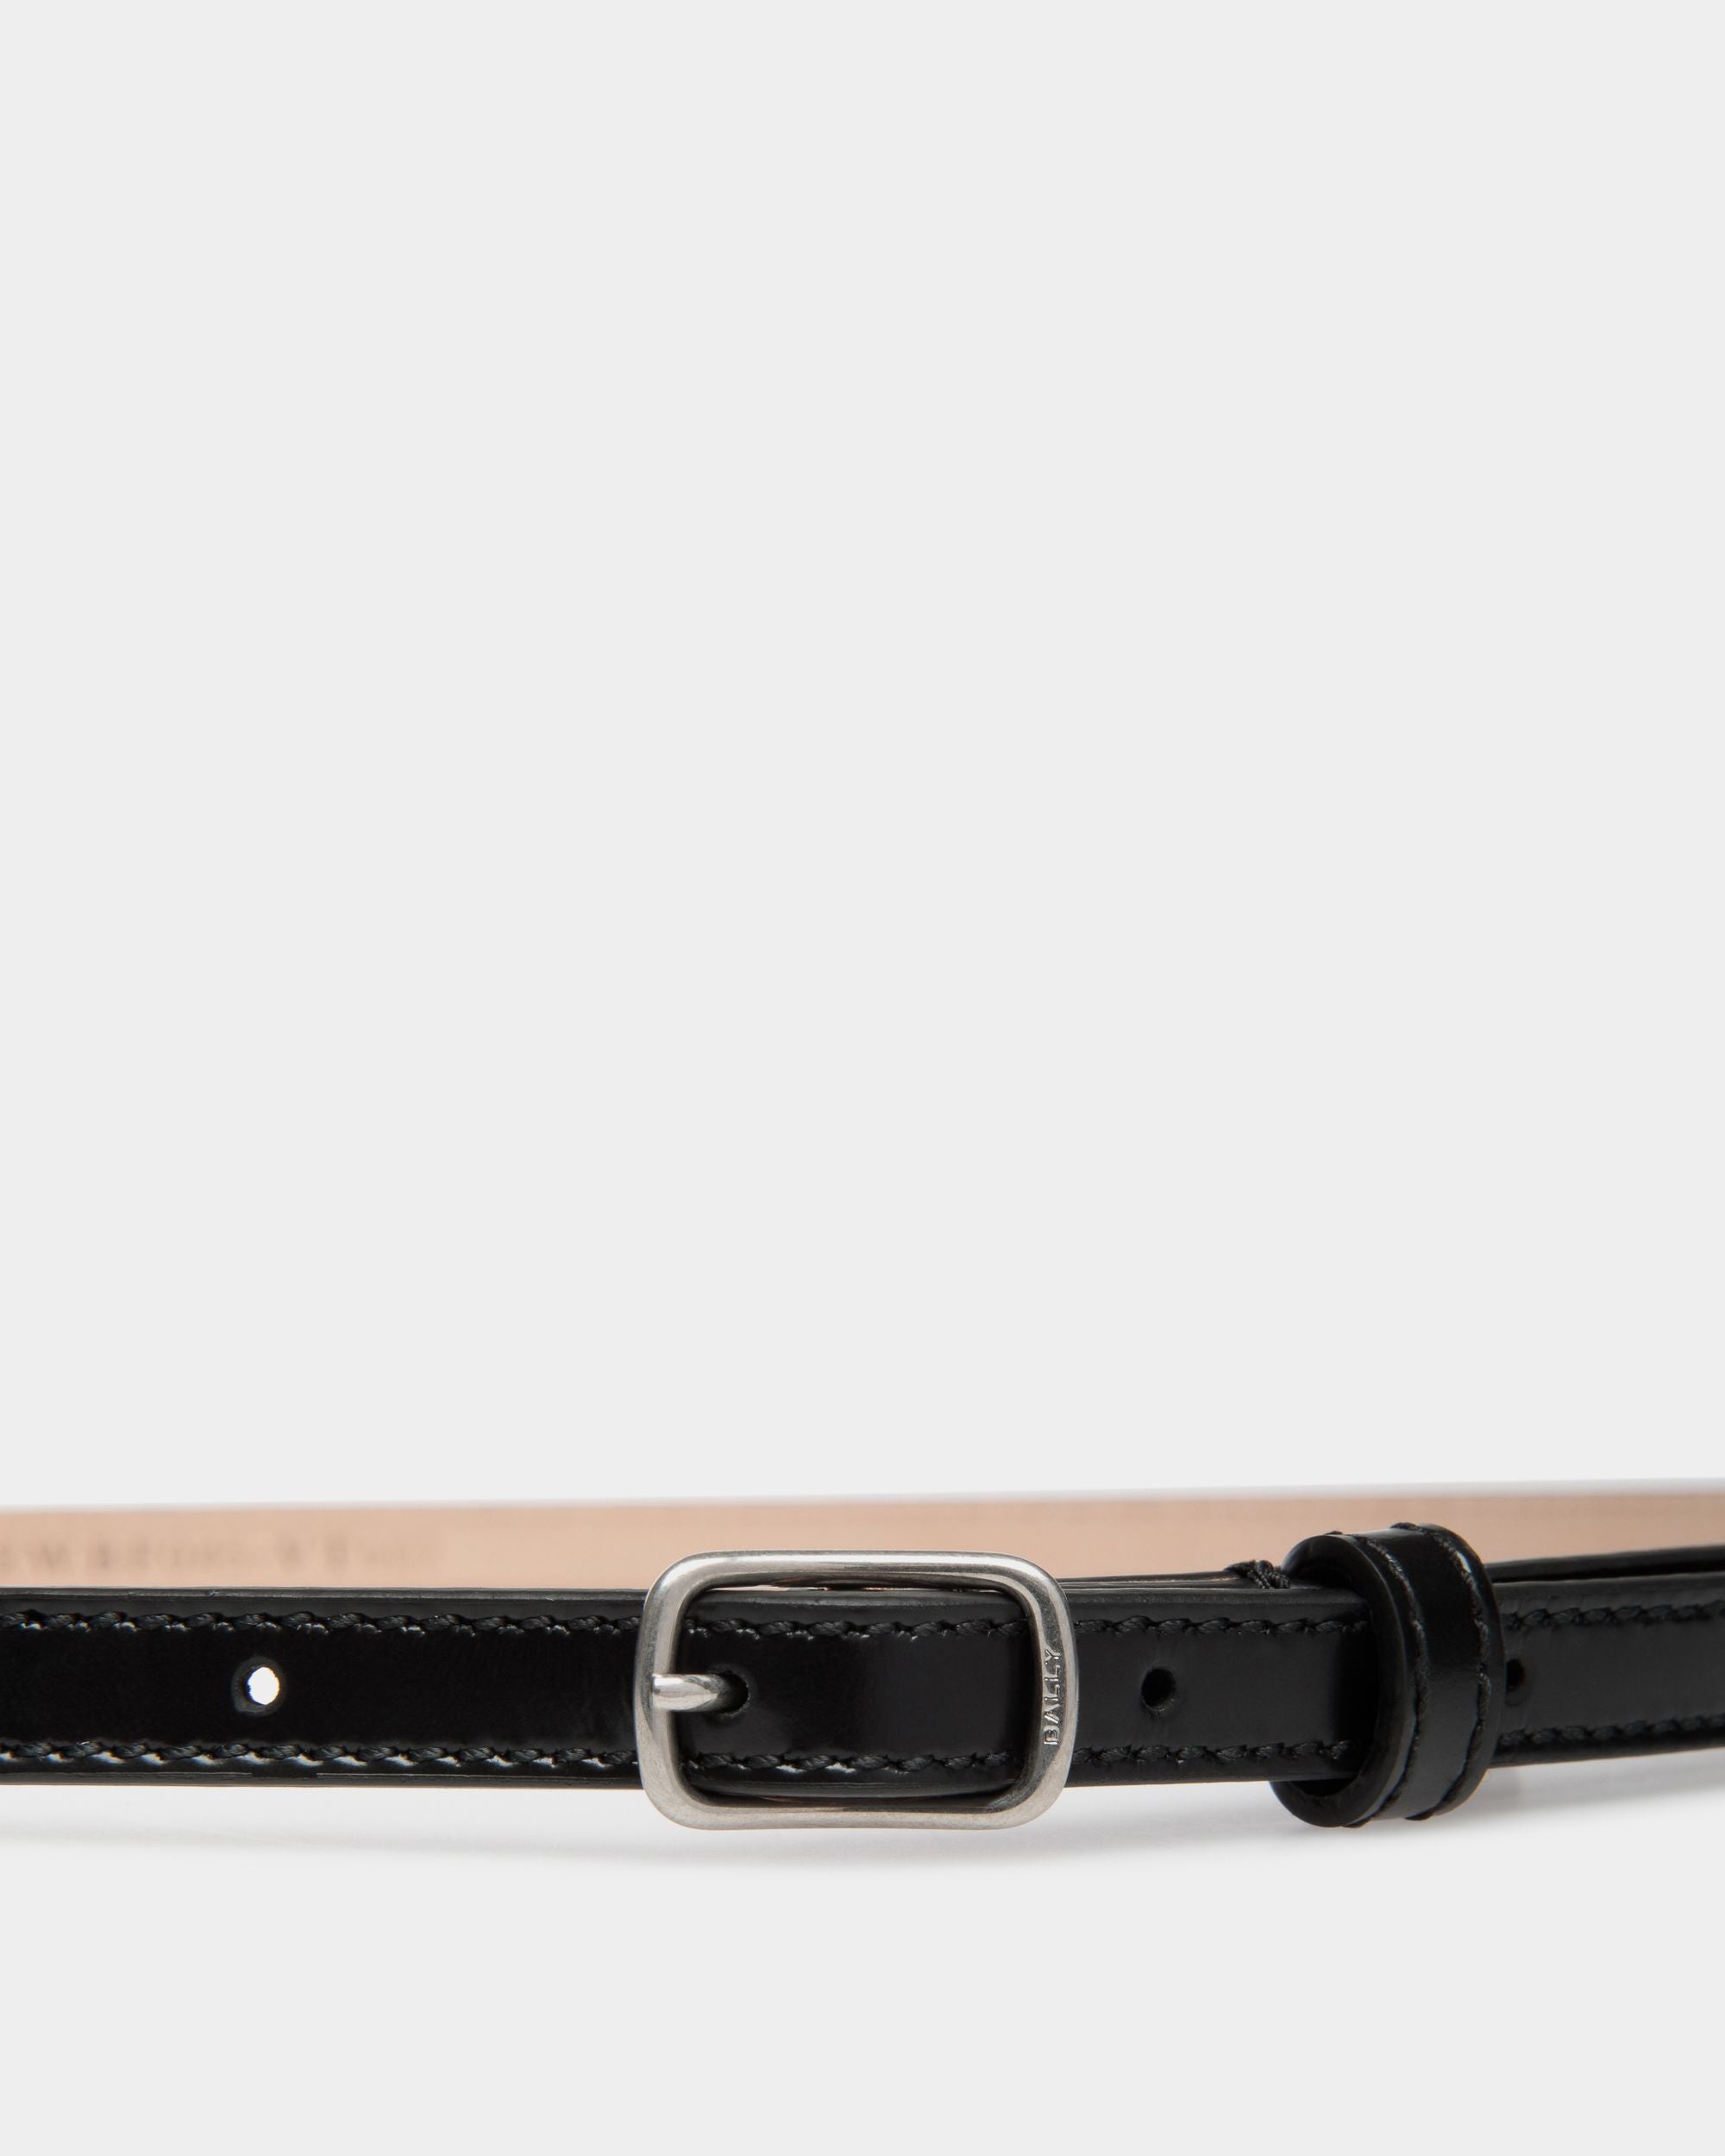 Sac 10 mm | Damengürtel aus gebürstetem Leder in Schwarz | Bally | Model getragen Vorderseite